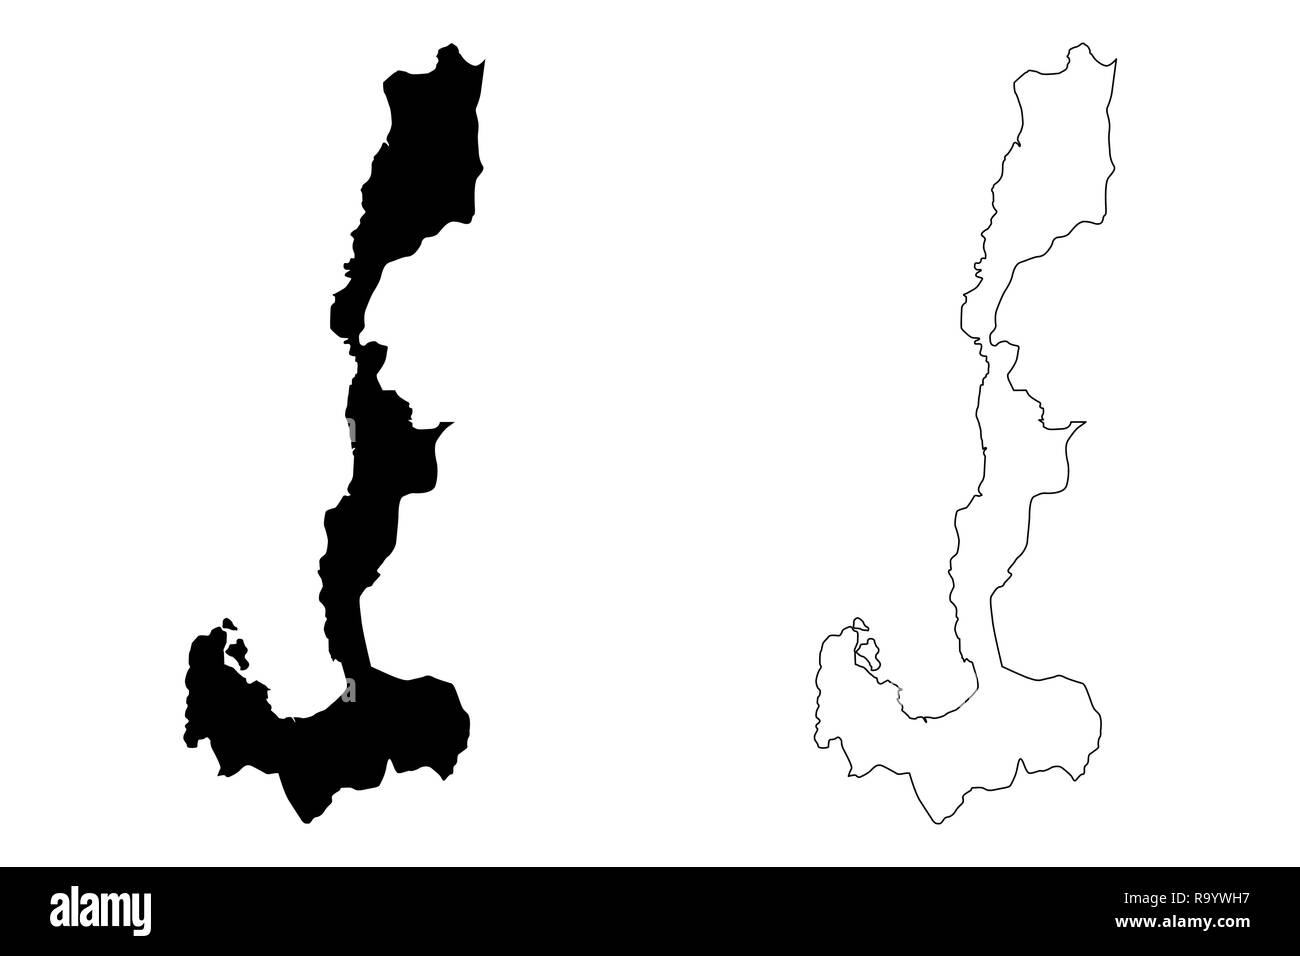 Ilocos Region (Regionen und Provinzen der Philippinen, die Republik der Philippinen) Karte Vektor-illustration, kritzeln Skizze Region I Karte Stock Vektor